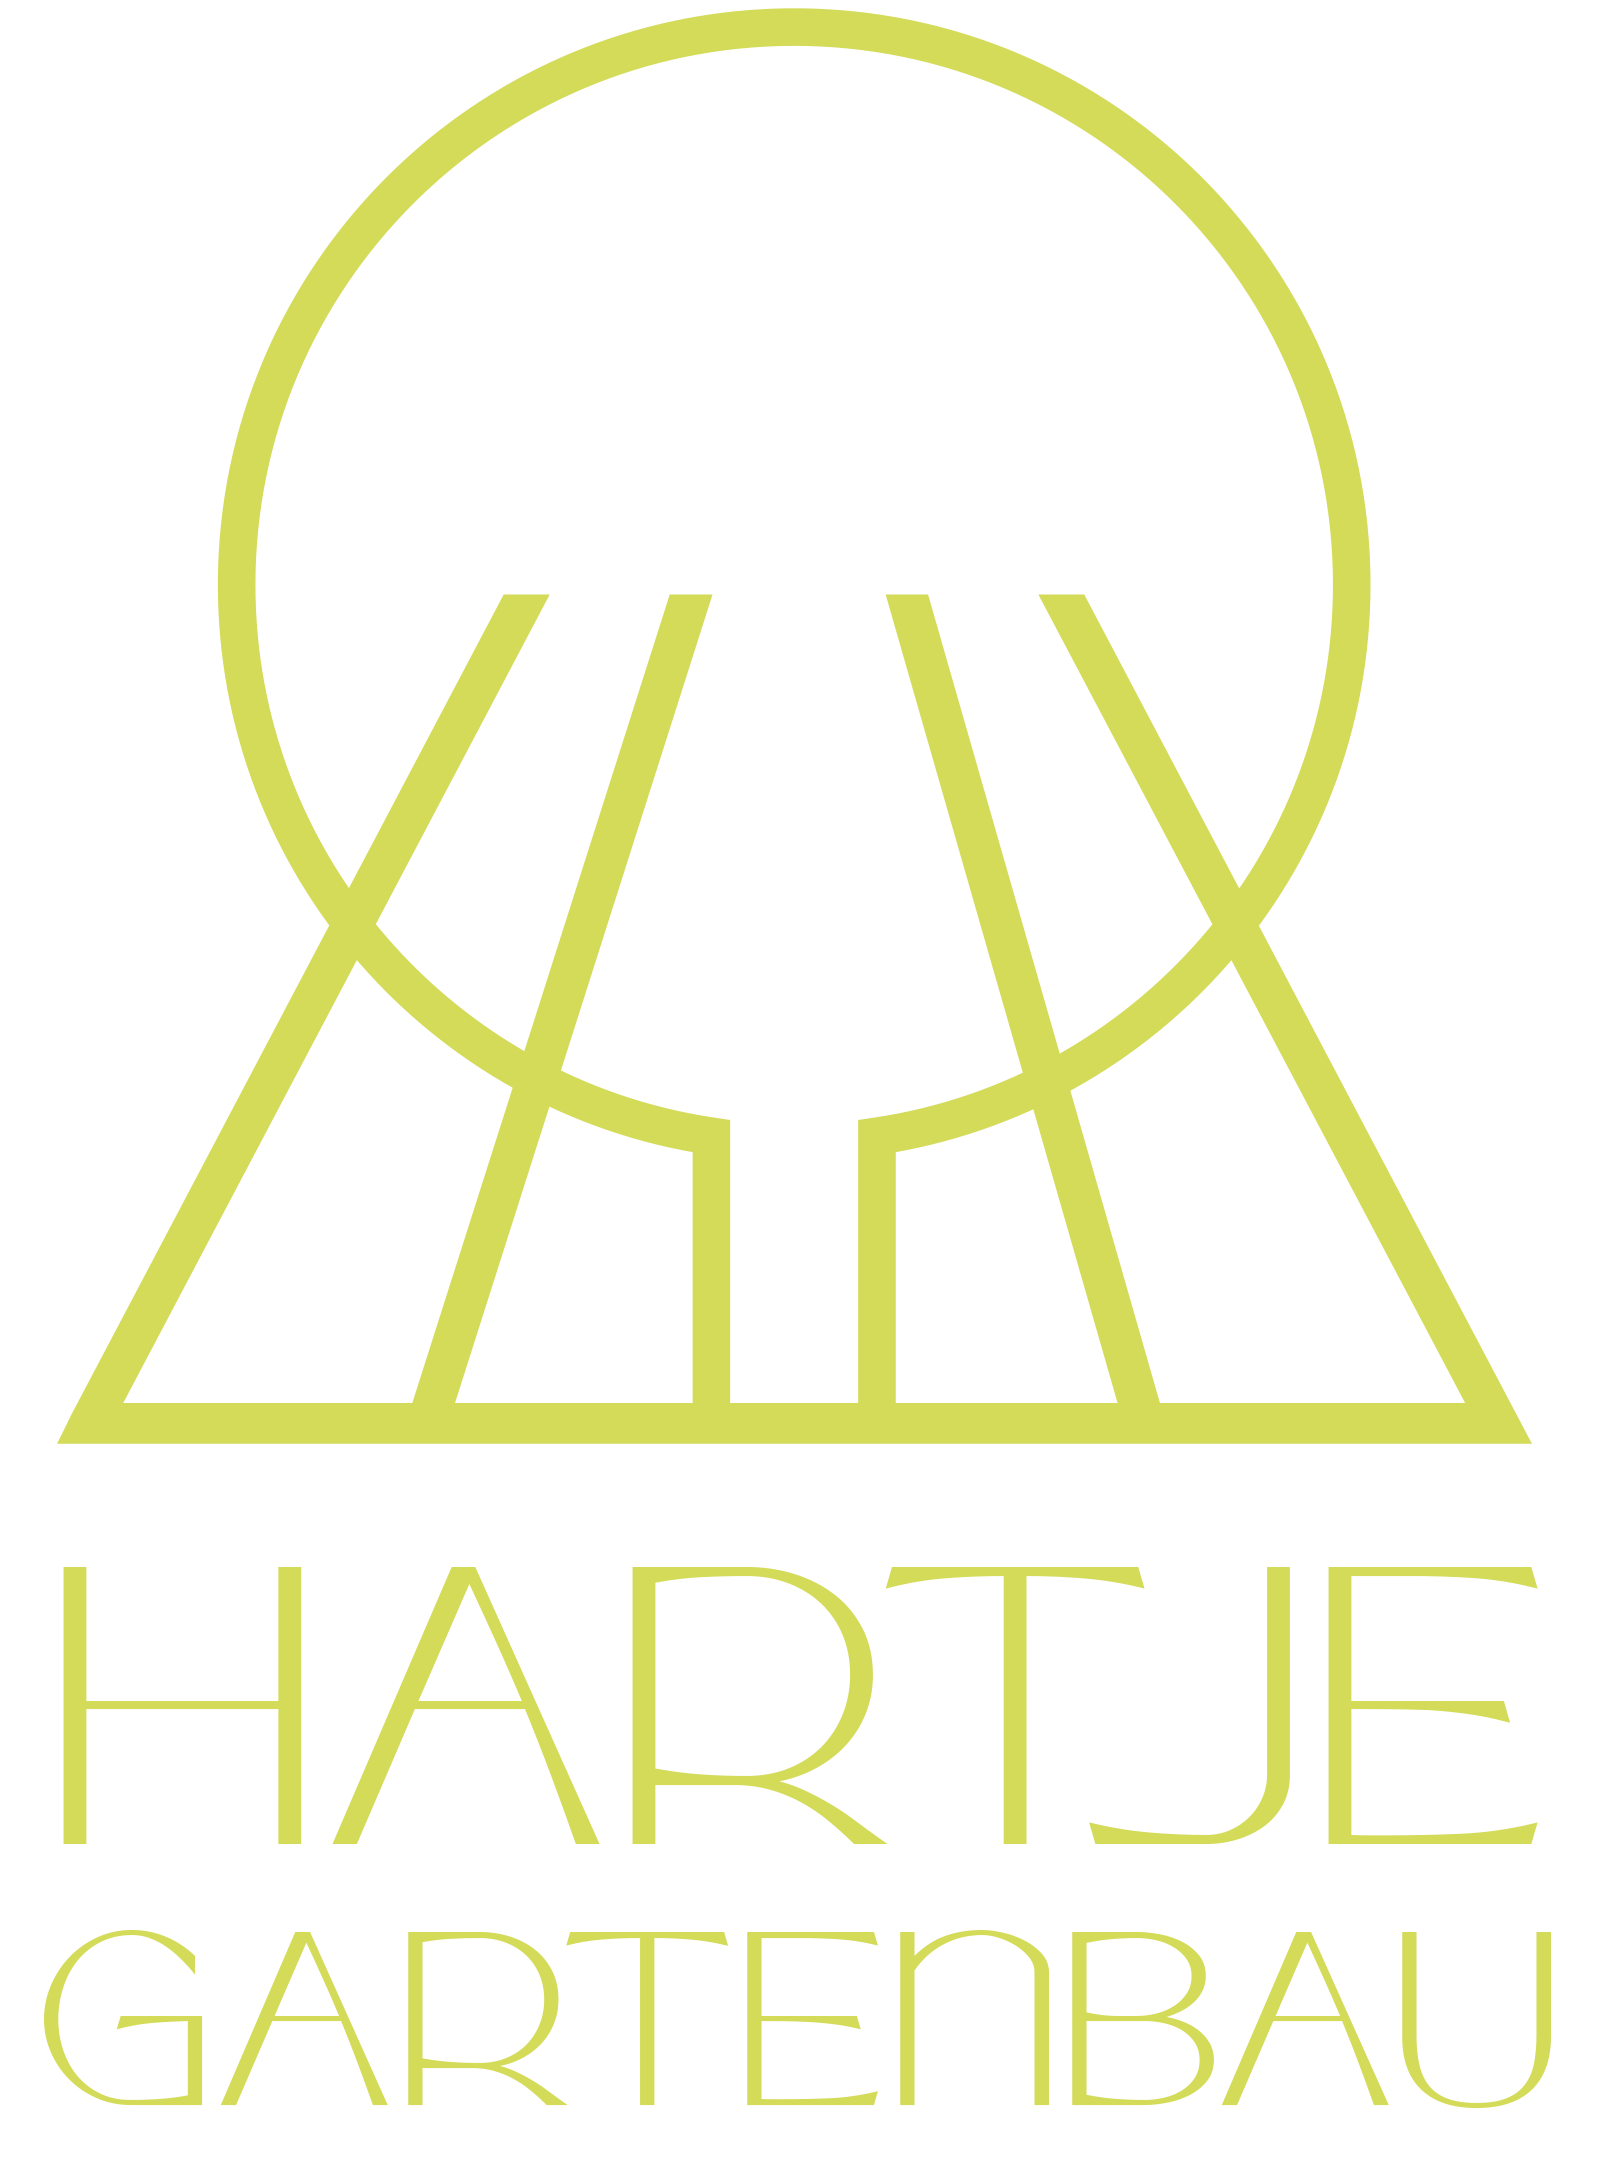 NEU_logo_hartje_gartenbau-2_